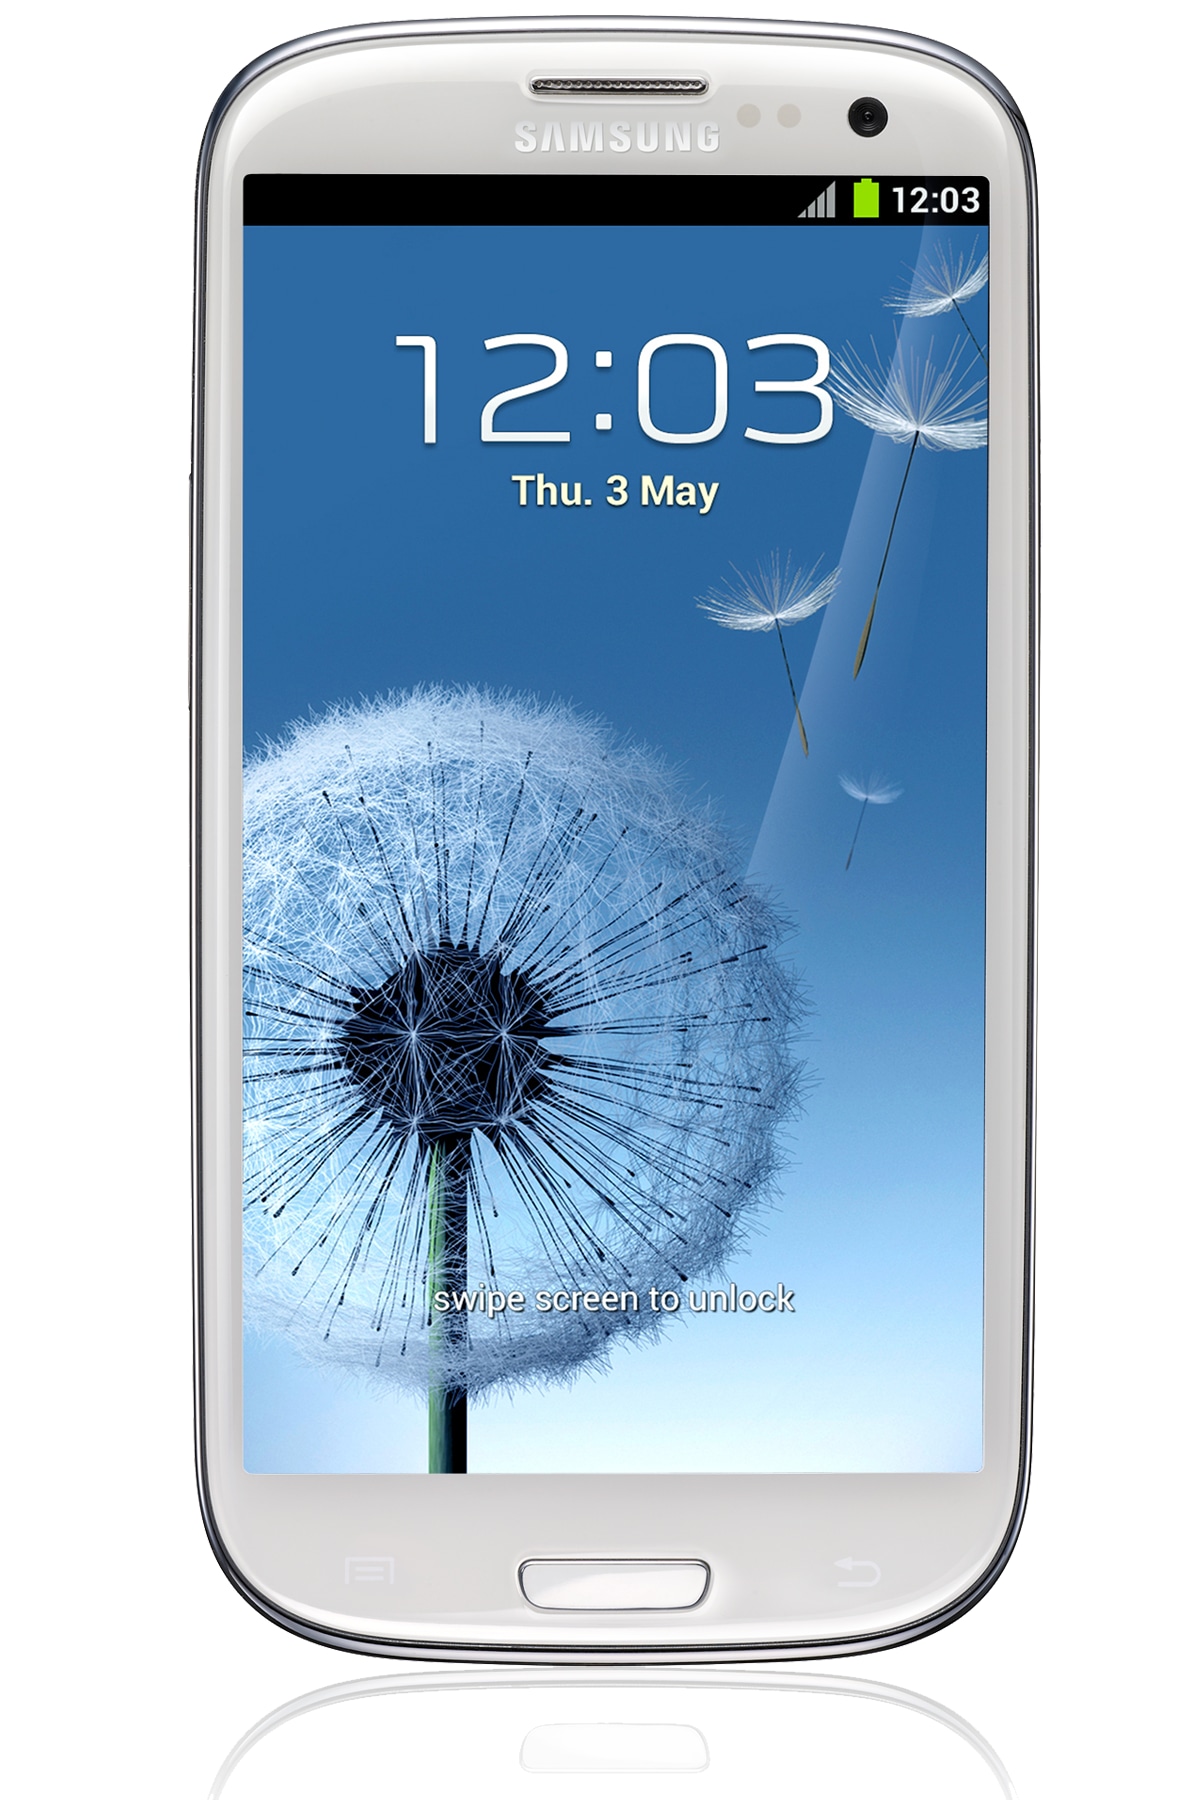 Bestuiver Bloesem programma Samsung Galaxy S III (S3) 4G LTE - 8MP, 4.8“, 1.4GHz, 720 x 1280 (HD) |  Samsung IE